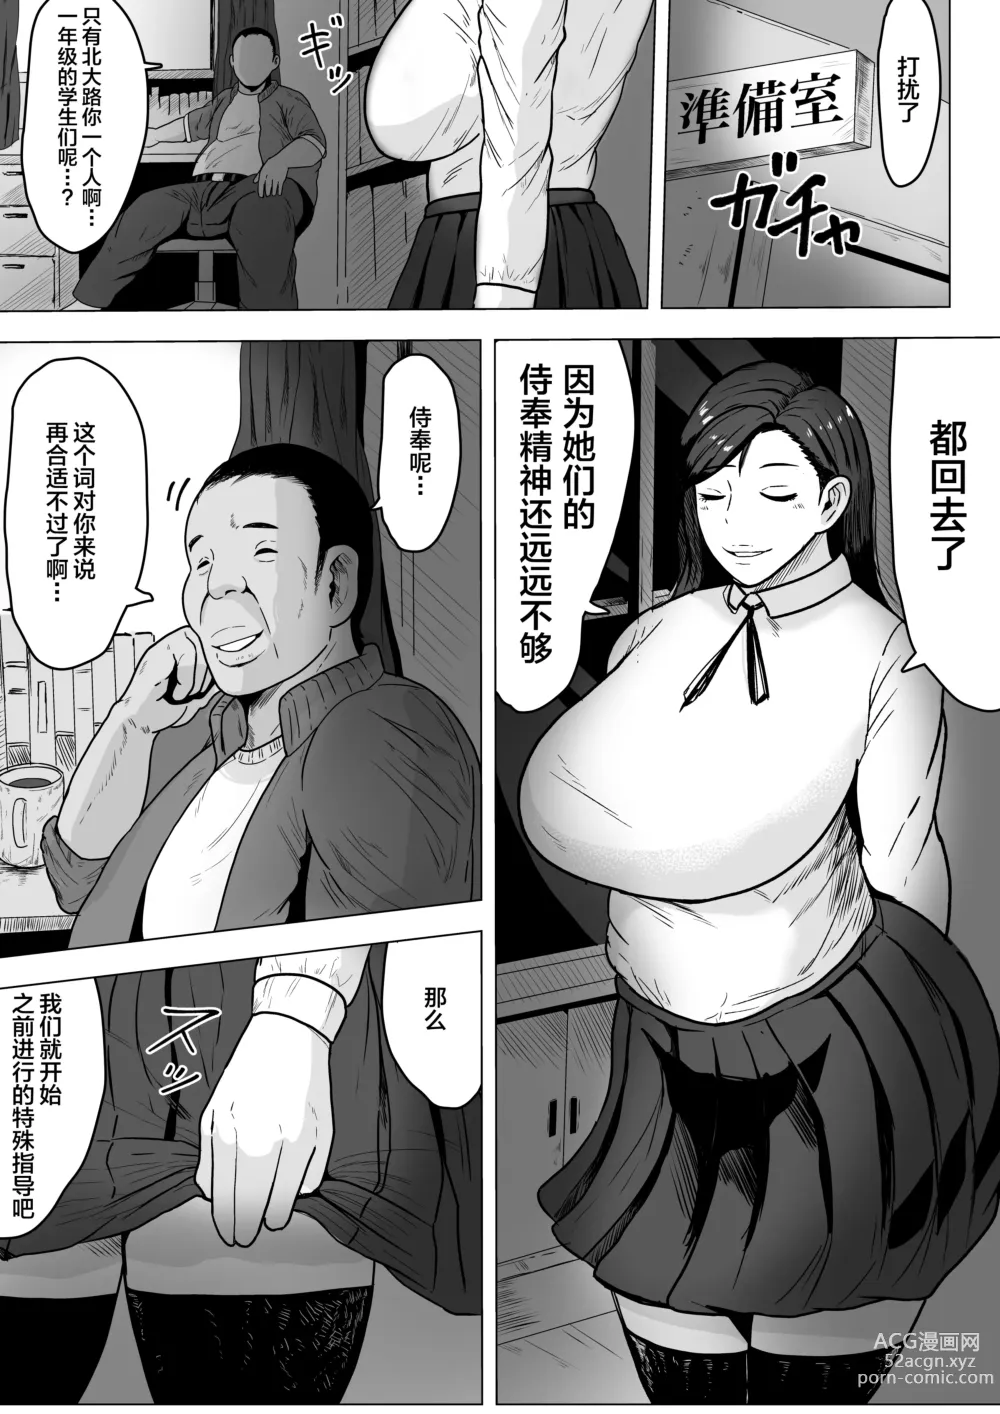 Page 5 of doujinshi Kurokami JK no Hentai